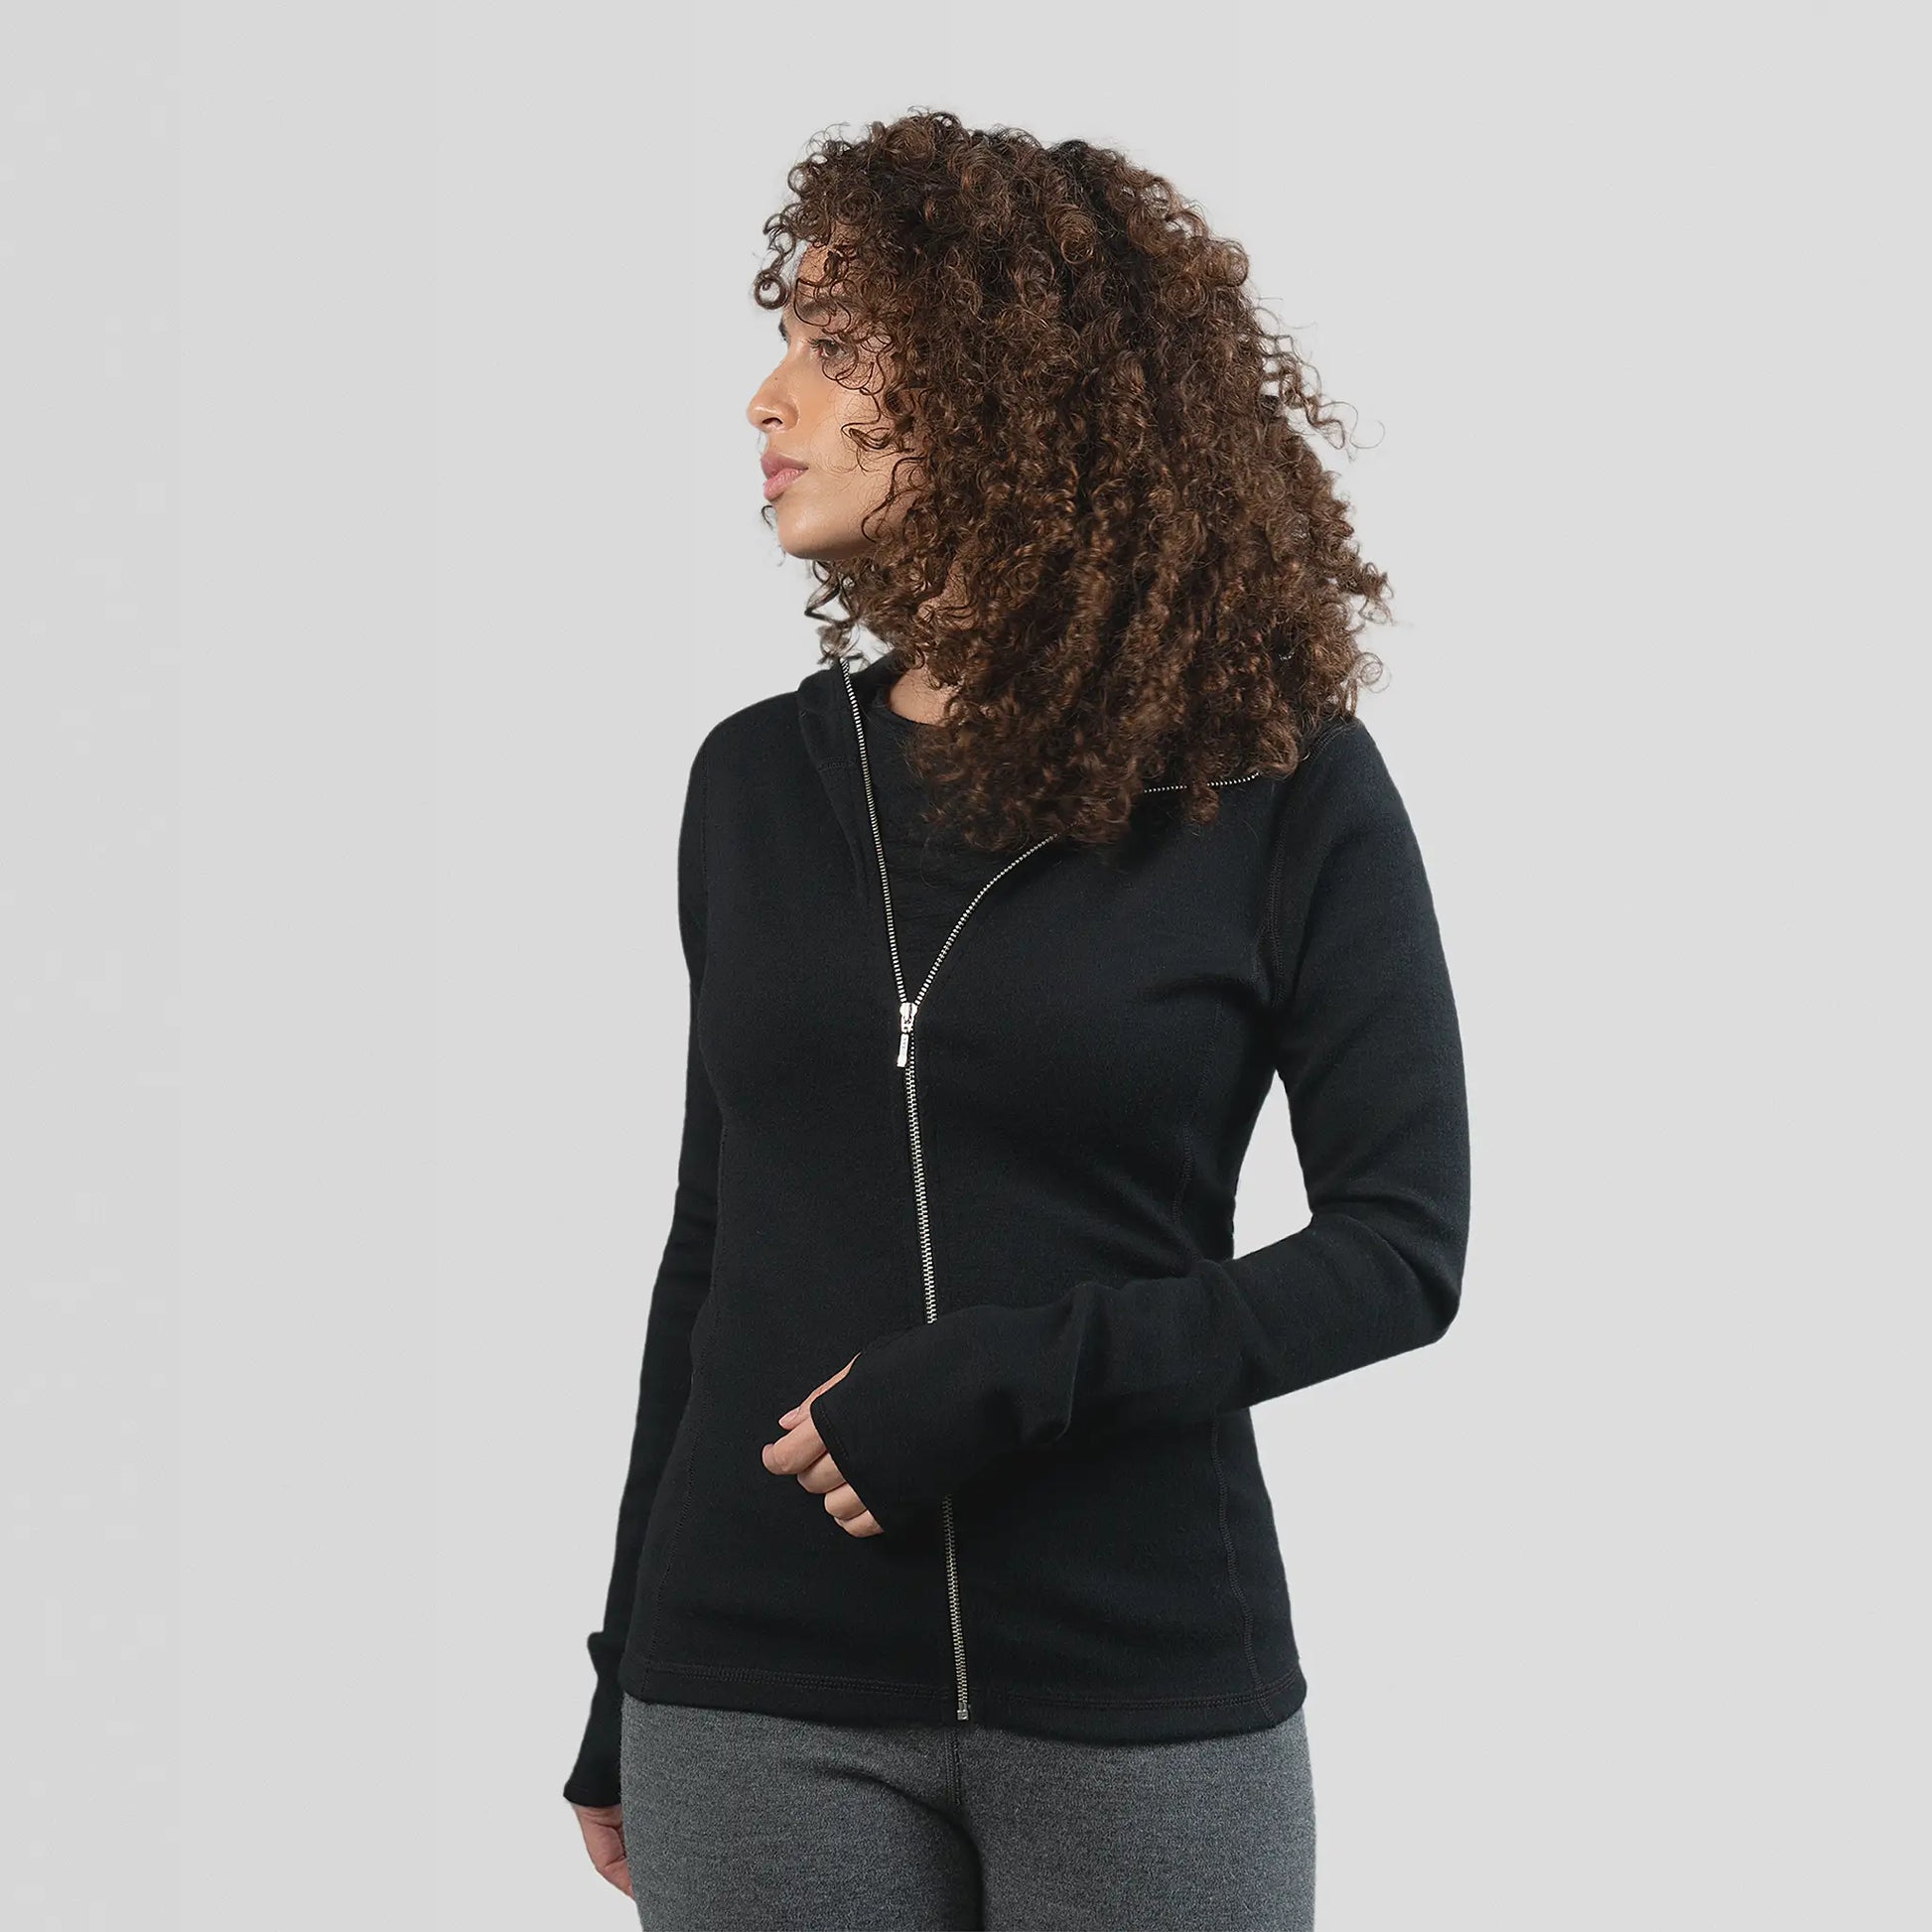  womens breathable hoodie jacket full zip color black